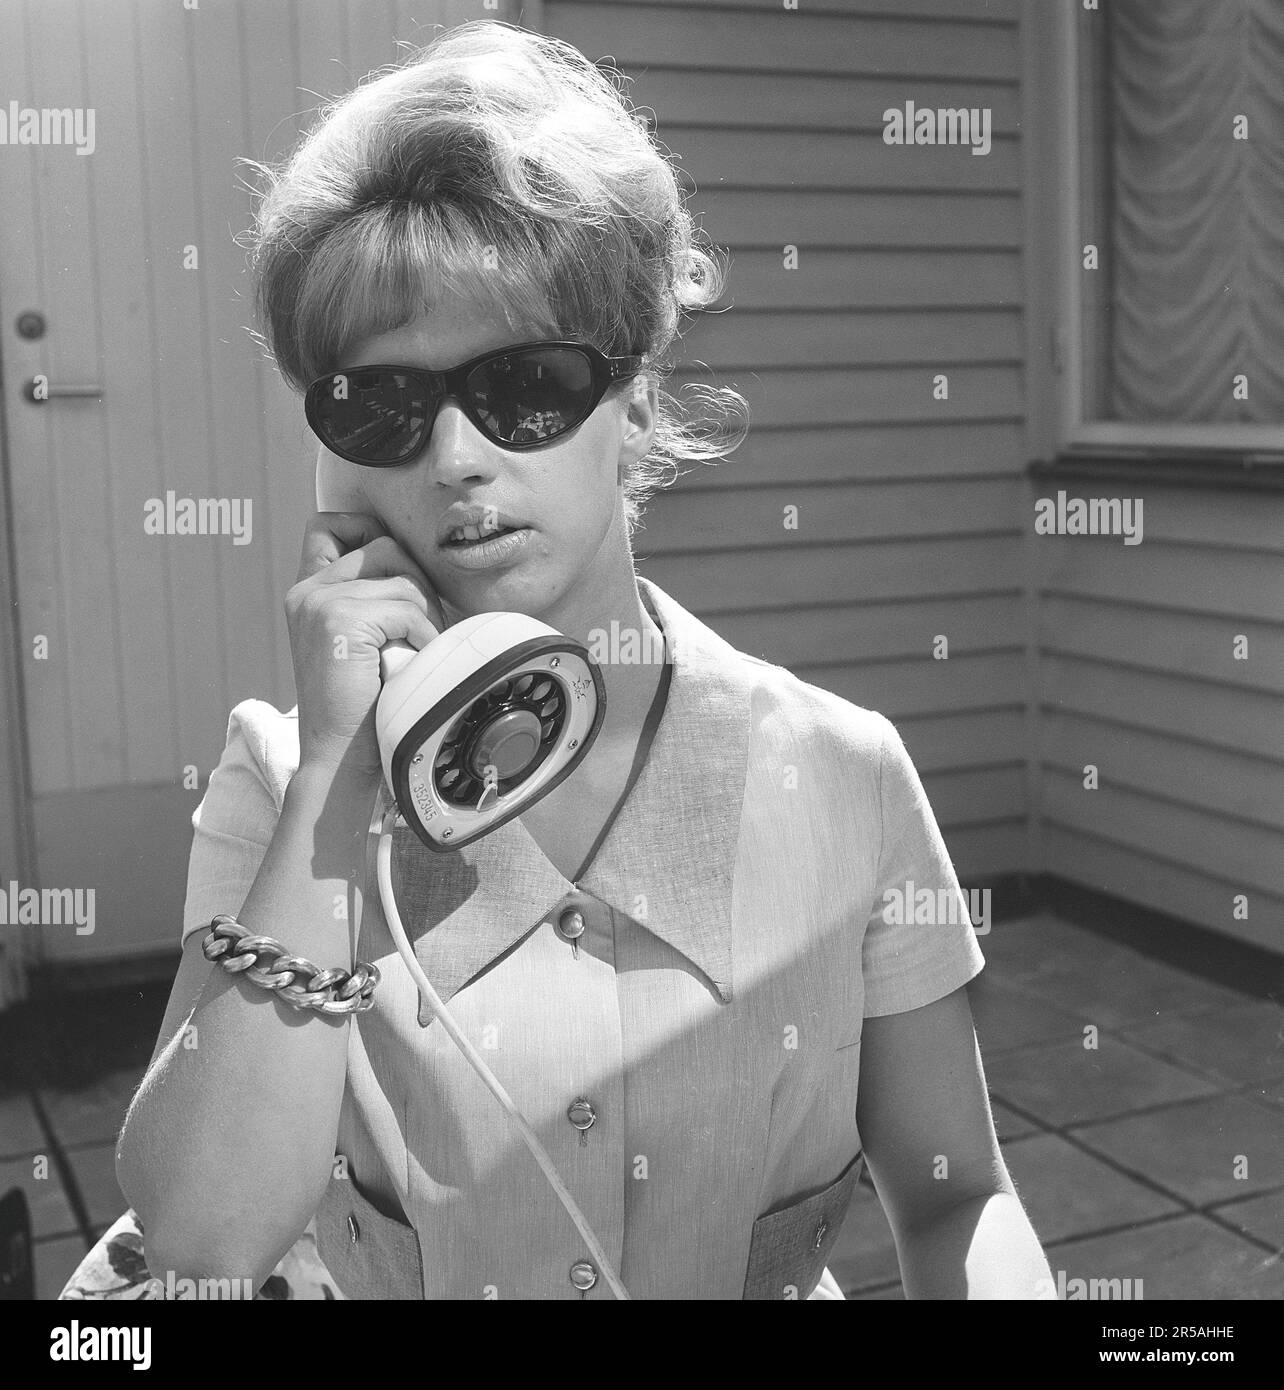 Occhiali da sole donna modello anni '60 immagini e fotografie stock ad alta  risoluzione - Pagina 2 - Alamy